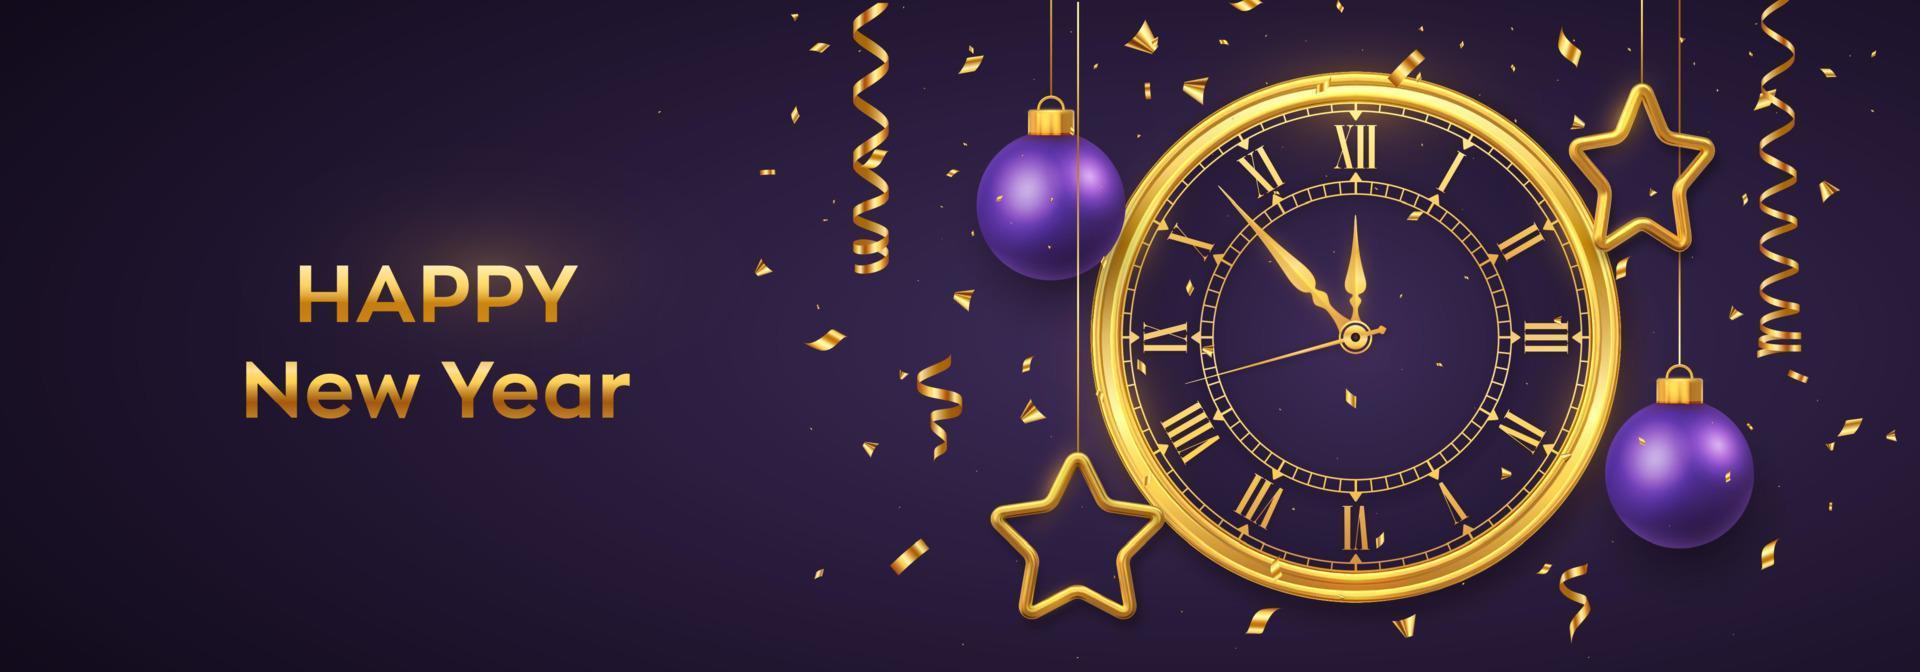 bonne année 2022. montre dorée brillante avec chiffre romain et compte à rebours minuit, veille du nouvel an. fond avec des étoiles et des boules d'or brillant. joyeux Noël. vacances de Noël. illustration vectorielle. vecteur